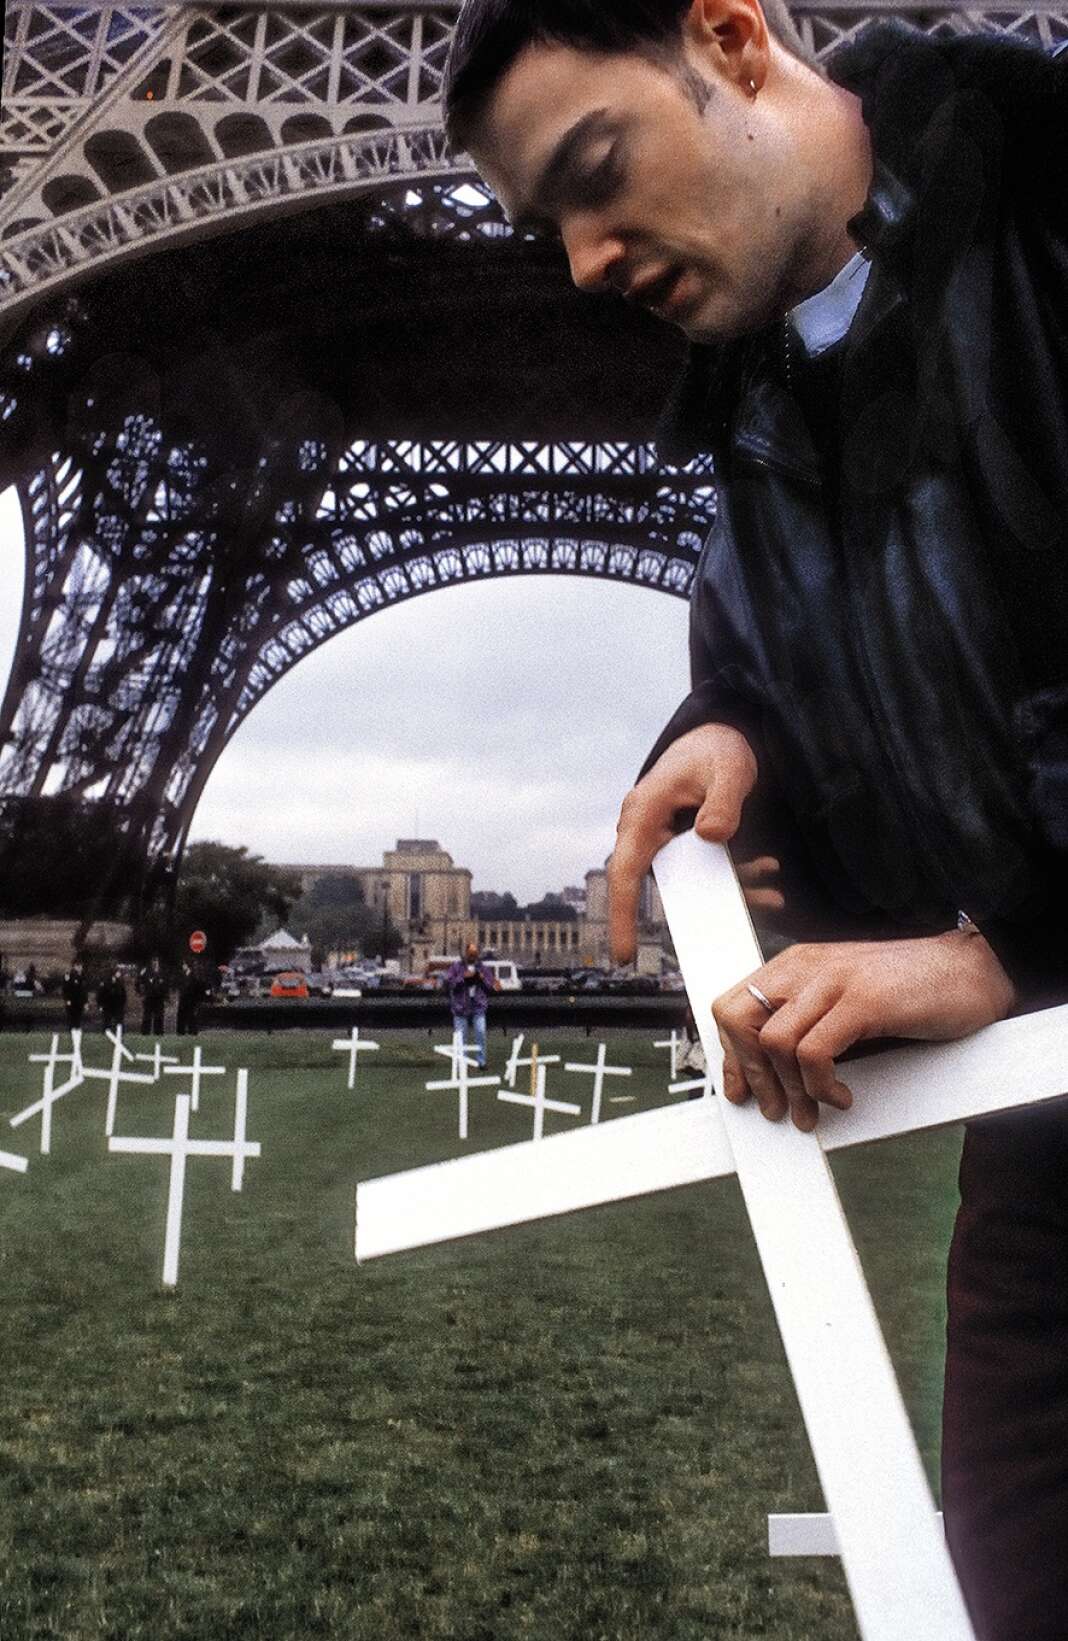 Premier « zap » du 21 mai 1994, décrété par Act Up Journée du désespoir : des militants installent sur le champ de mars des croix symbolisant les morts du sida.